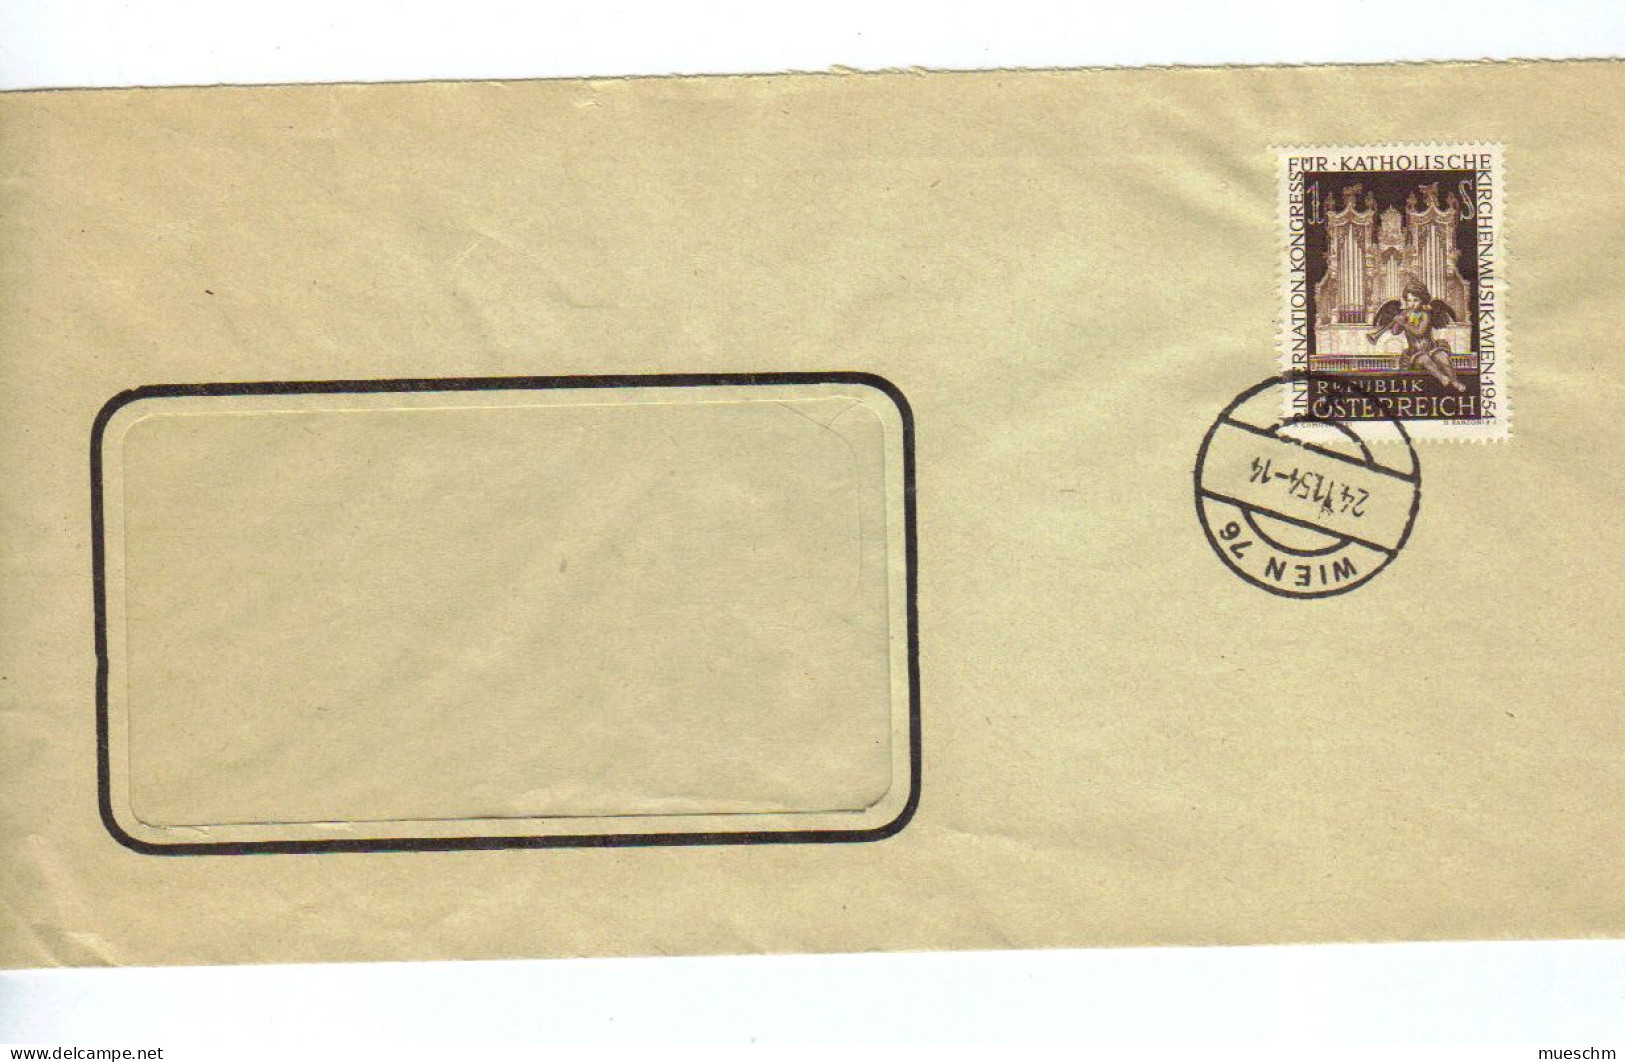 Österreich, 1954, Bedarfsbriefkuvert Frankiert Mit MiNr.1008 (Int.Kongreß F.kath.Kirchenmusik) (12389E) - Briefe